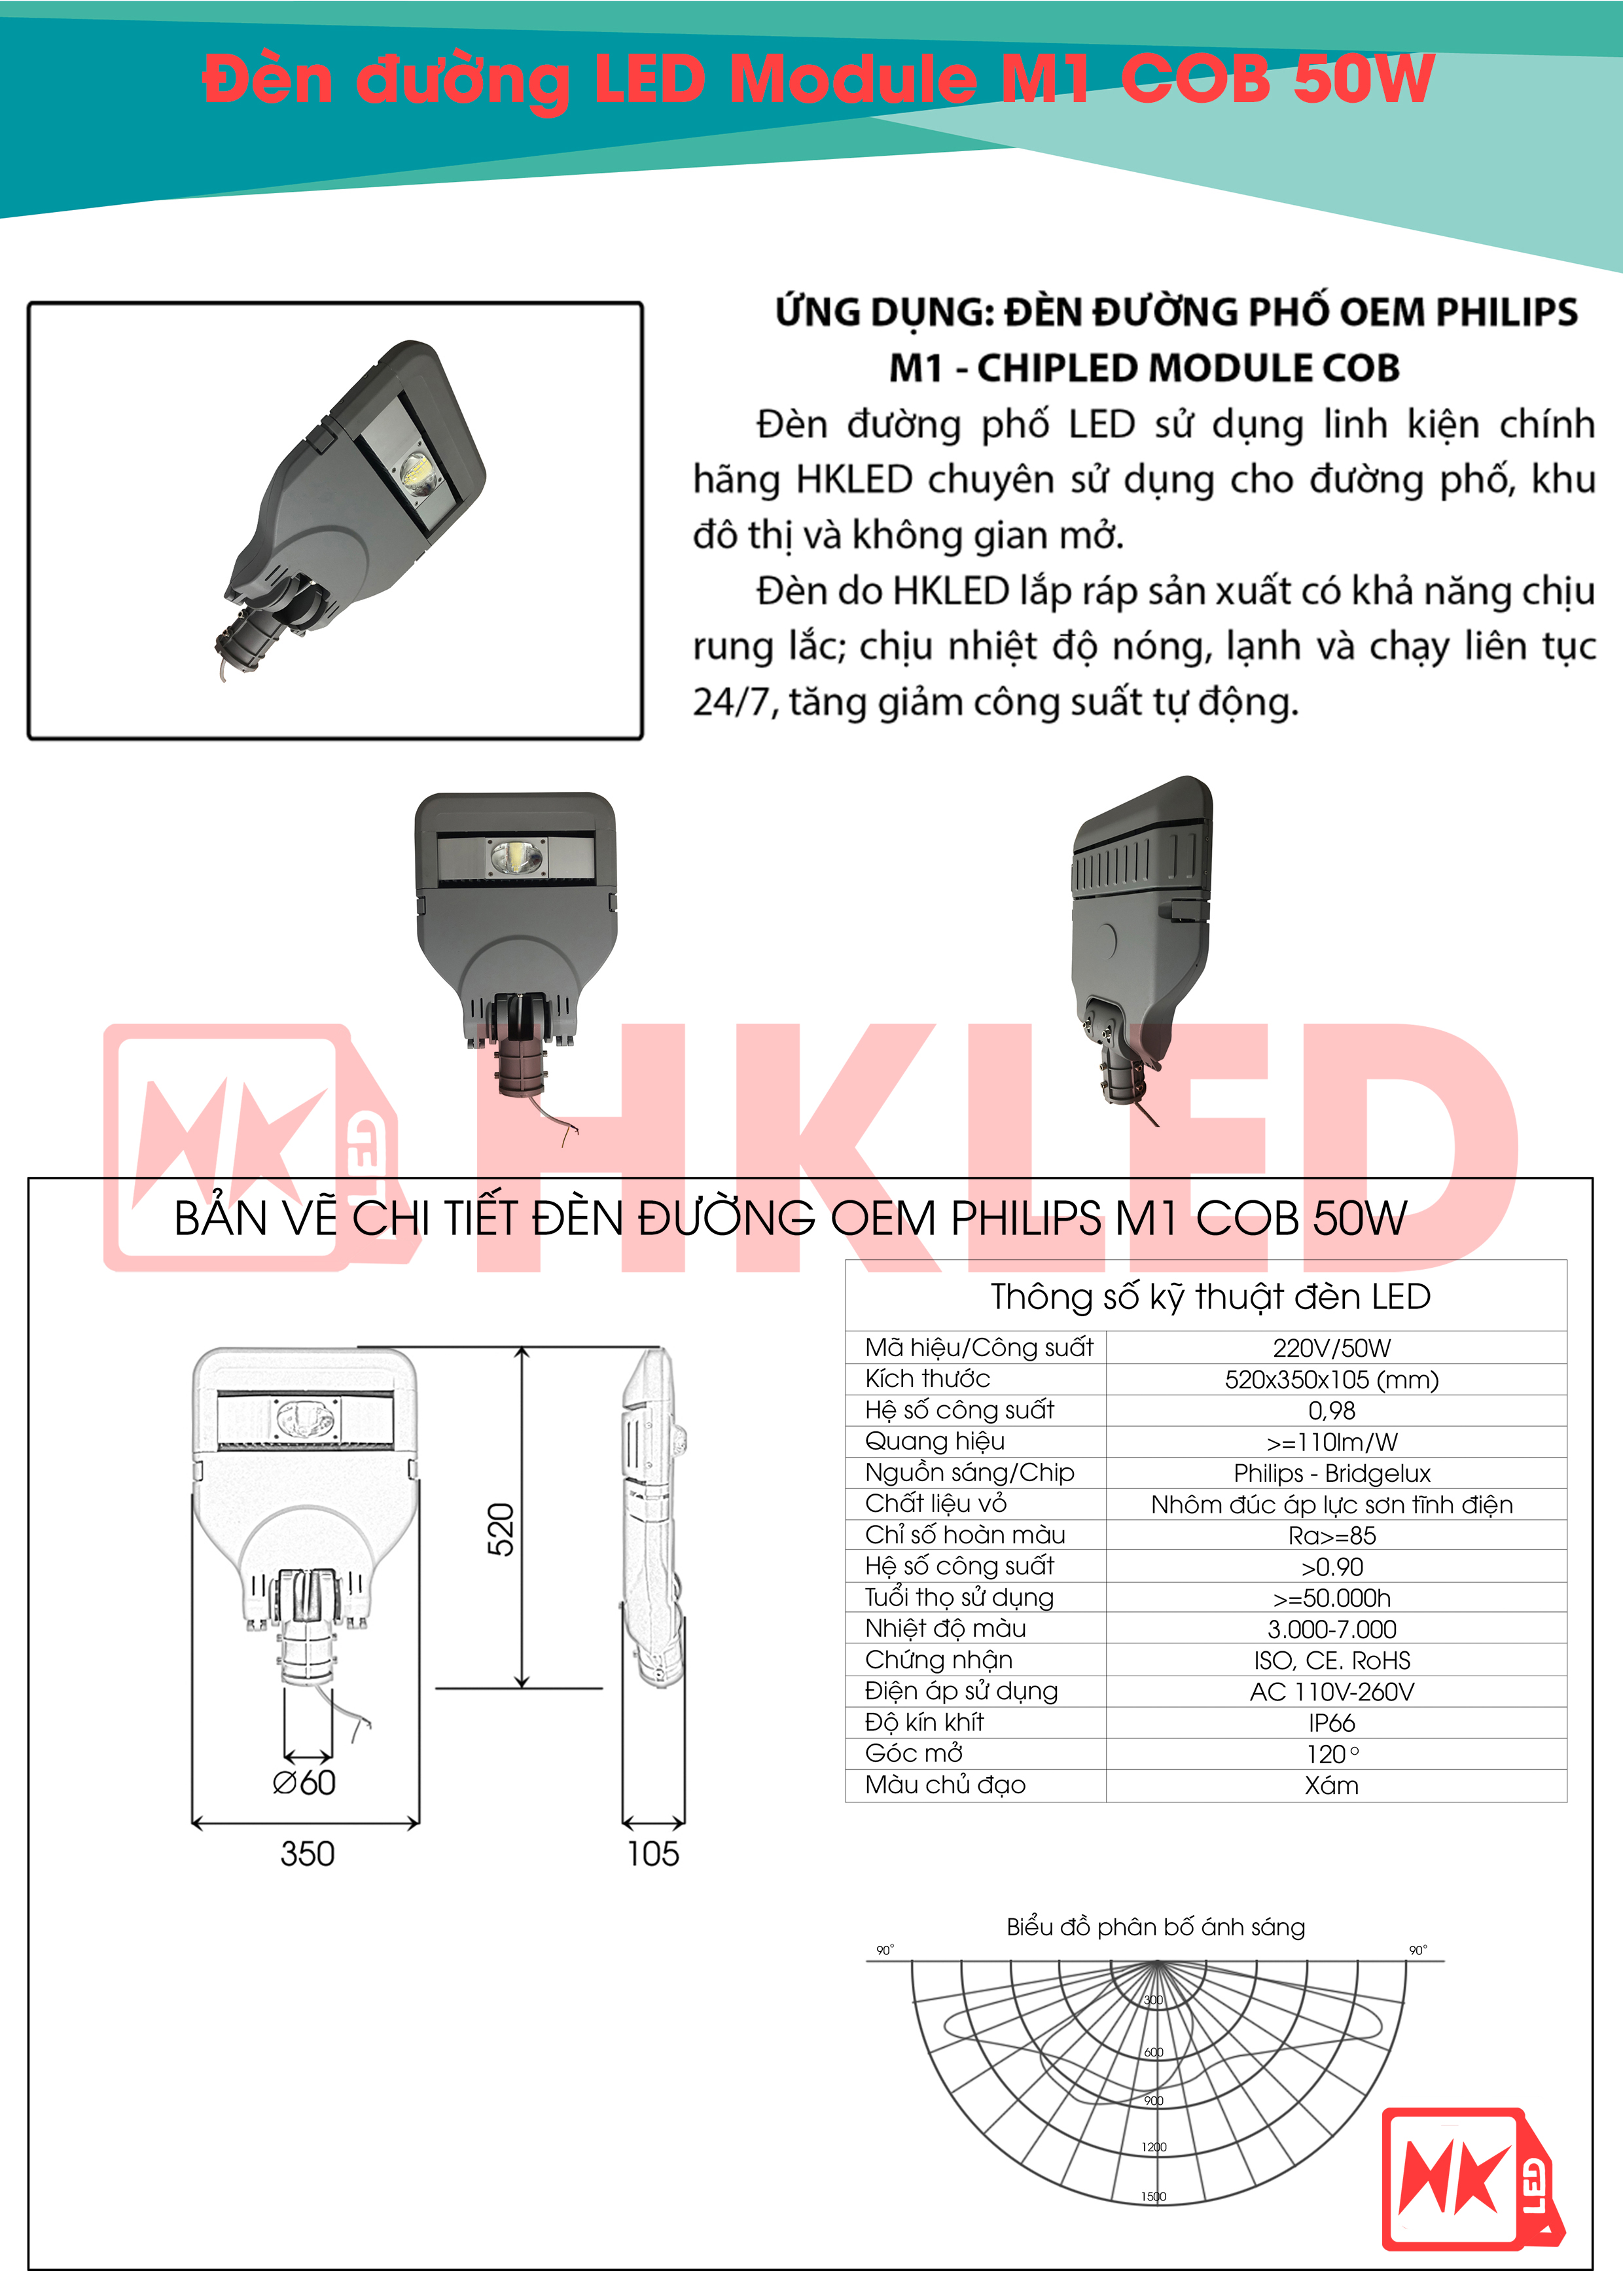 Ứng dụng, bản vẽ chi tiết và thông số kỹ thuật đèn đường LED OEM Philips M1 Module COB 50W